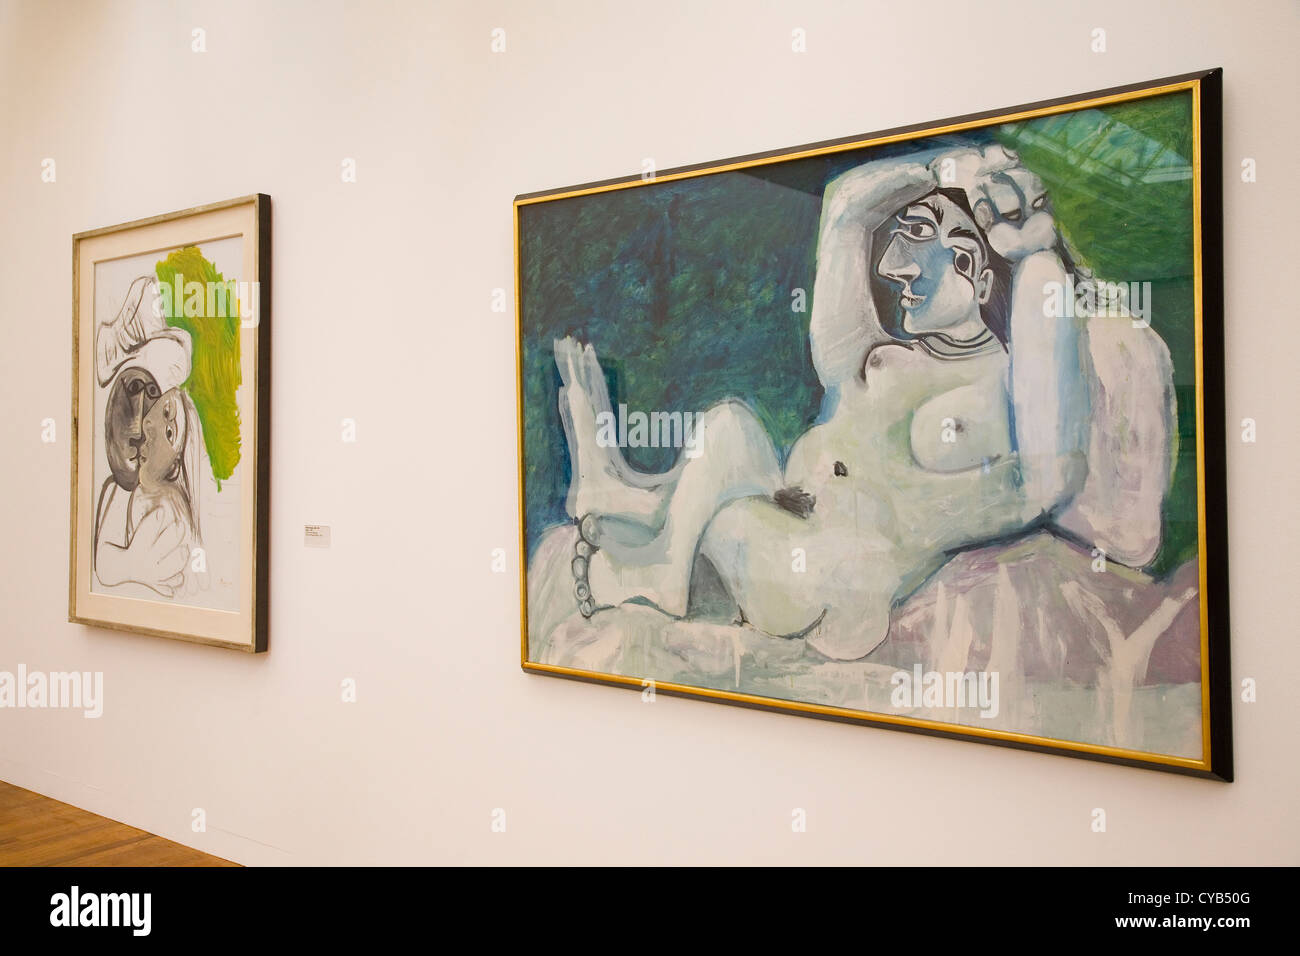 L'Europe, Suisse, Zurich, Kunsthaus, musée d'art, Pablo Picasso, peinture, baiser grand nu, 1969-1964 Banque D'Images